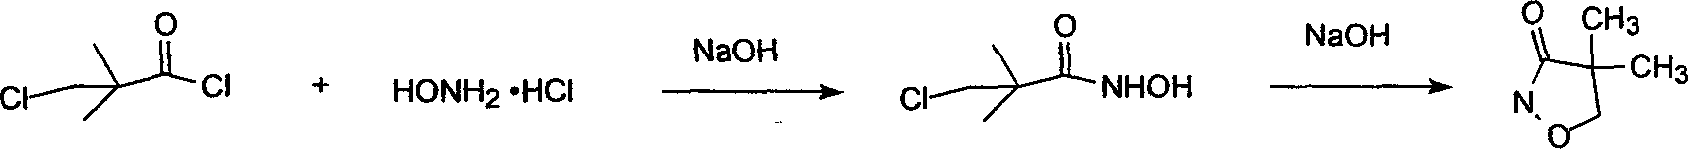 Method for synthesizing 4, 4-dimethyl-iso-xazole-3-one